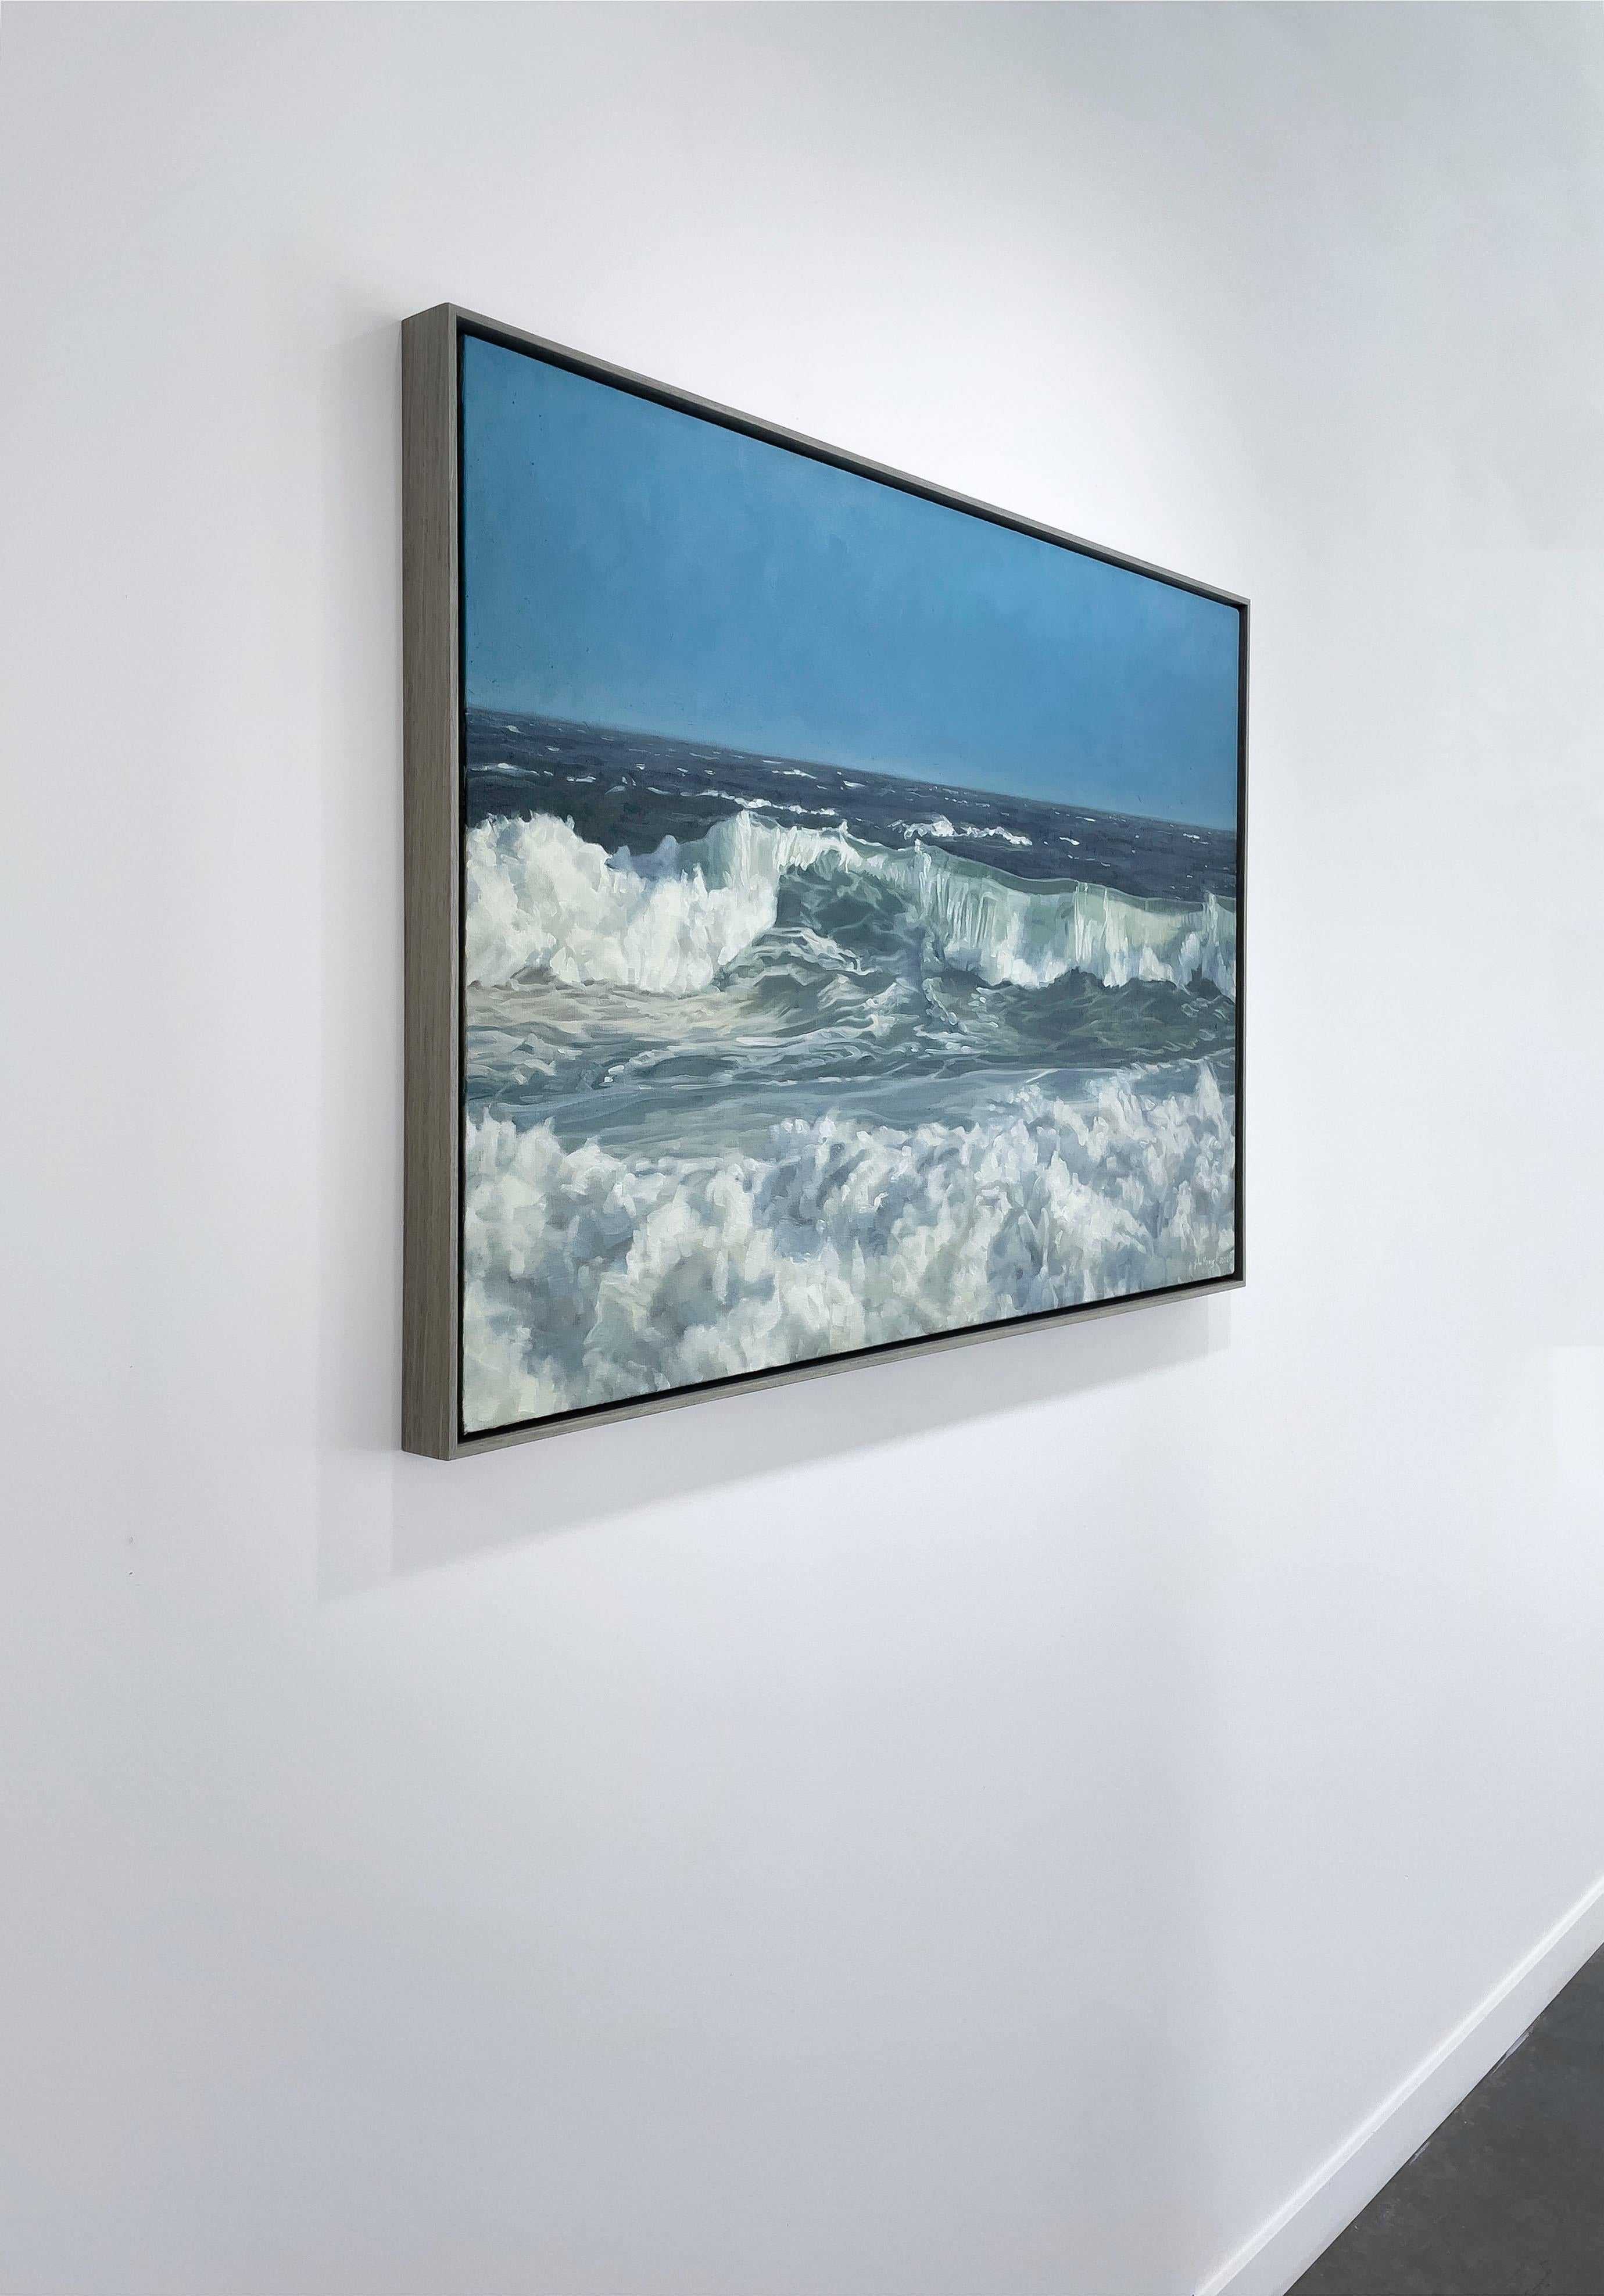 Cette peinture à l'huile côtière originale sur lin de John Harris présente une vue très détaillée des vagues de l'océan qui s'écrasent près d'un rivage sous un ciel bleu clair. La pièce présente un mélange de tons bleus froids et de vert de mer, mis